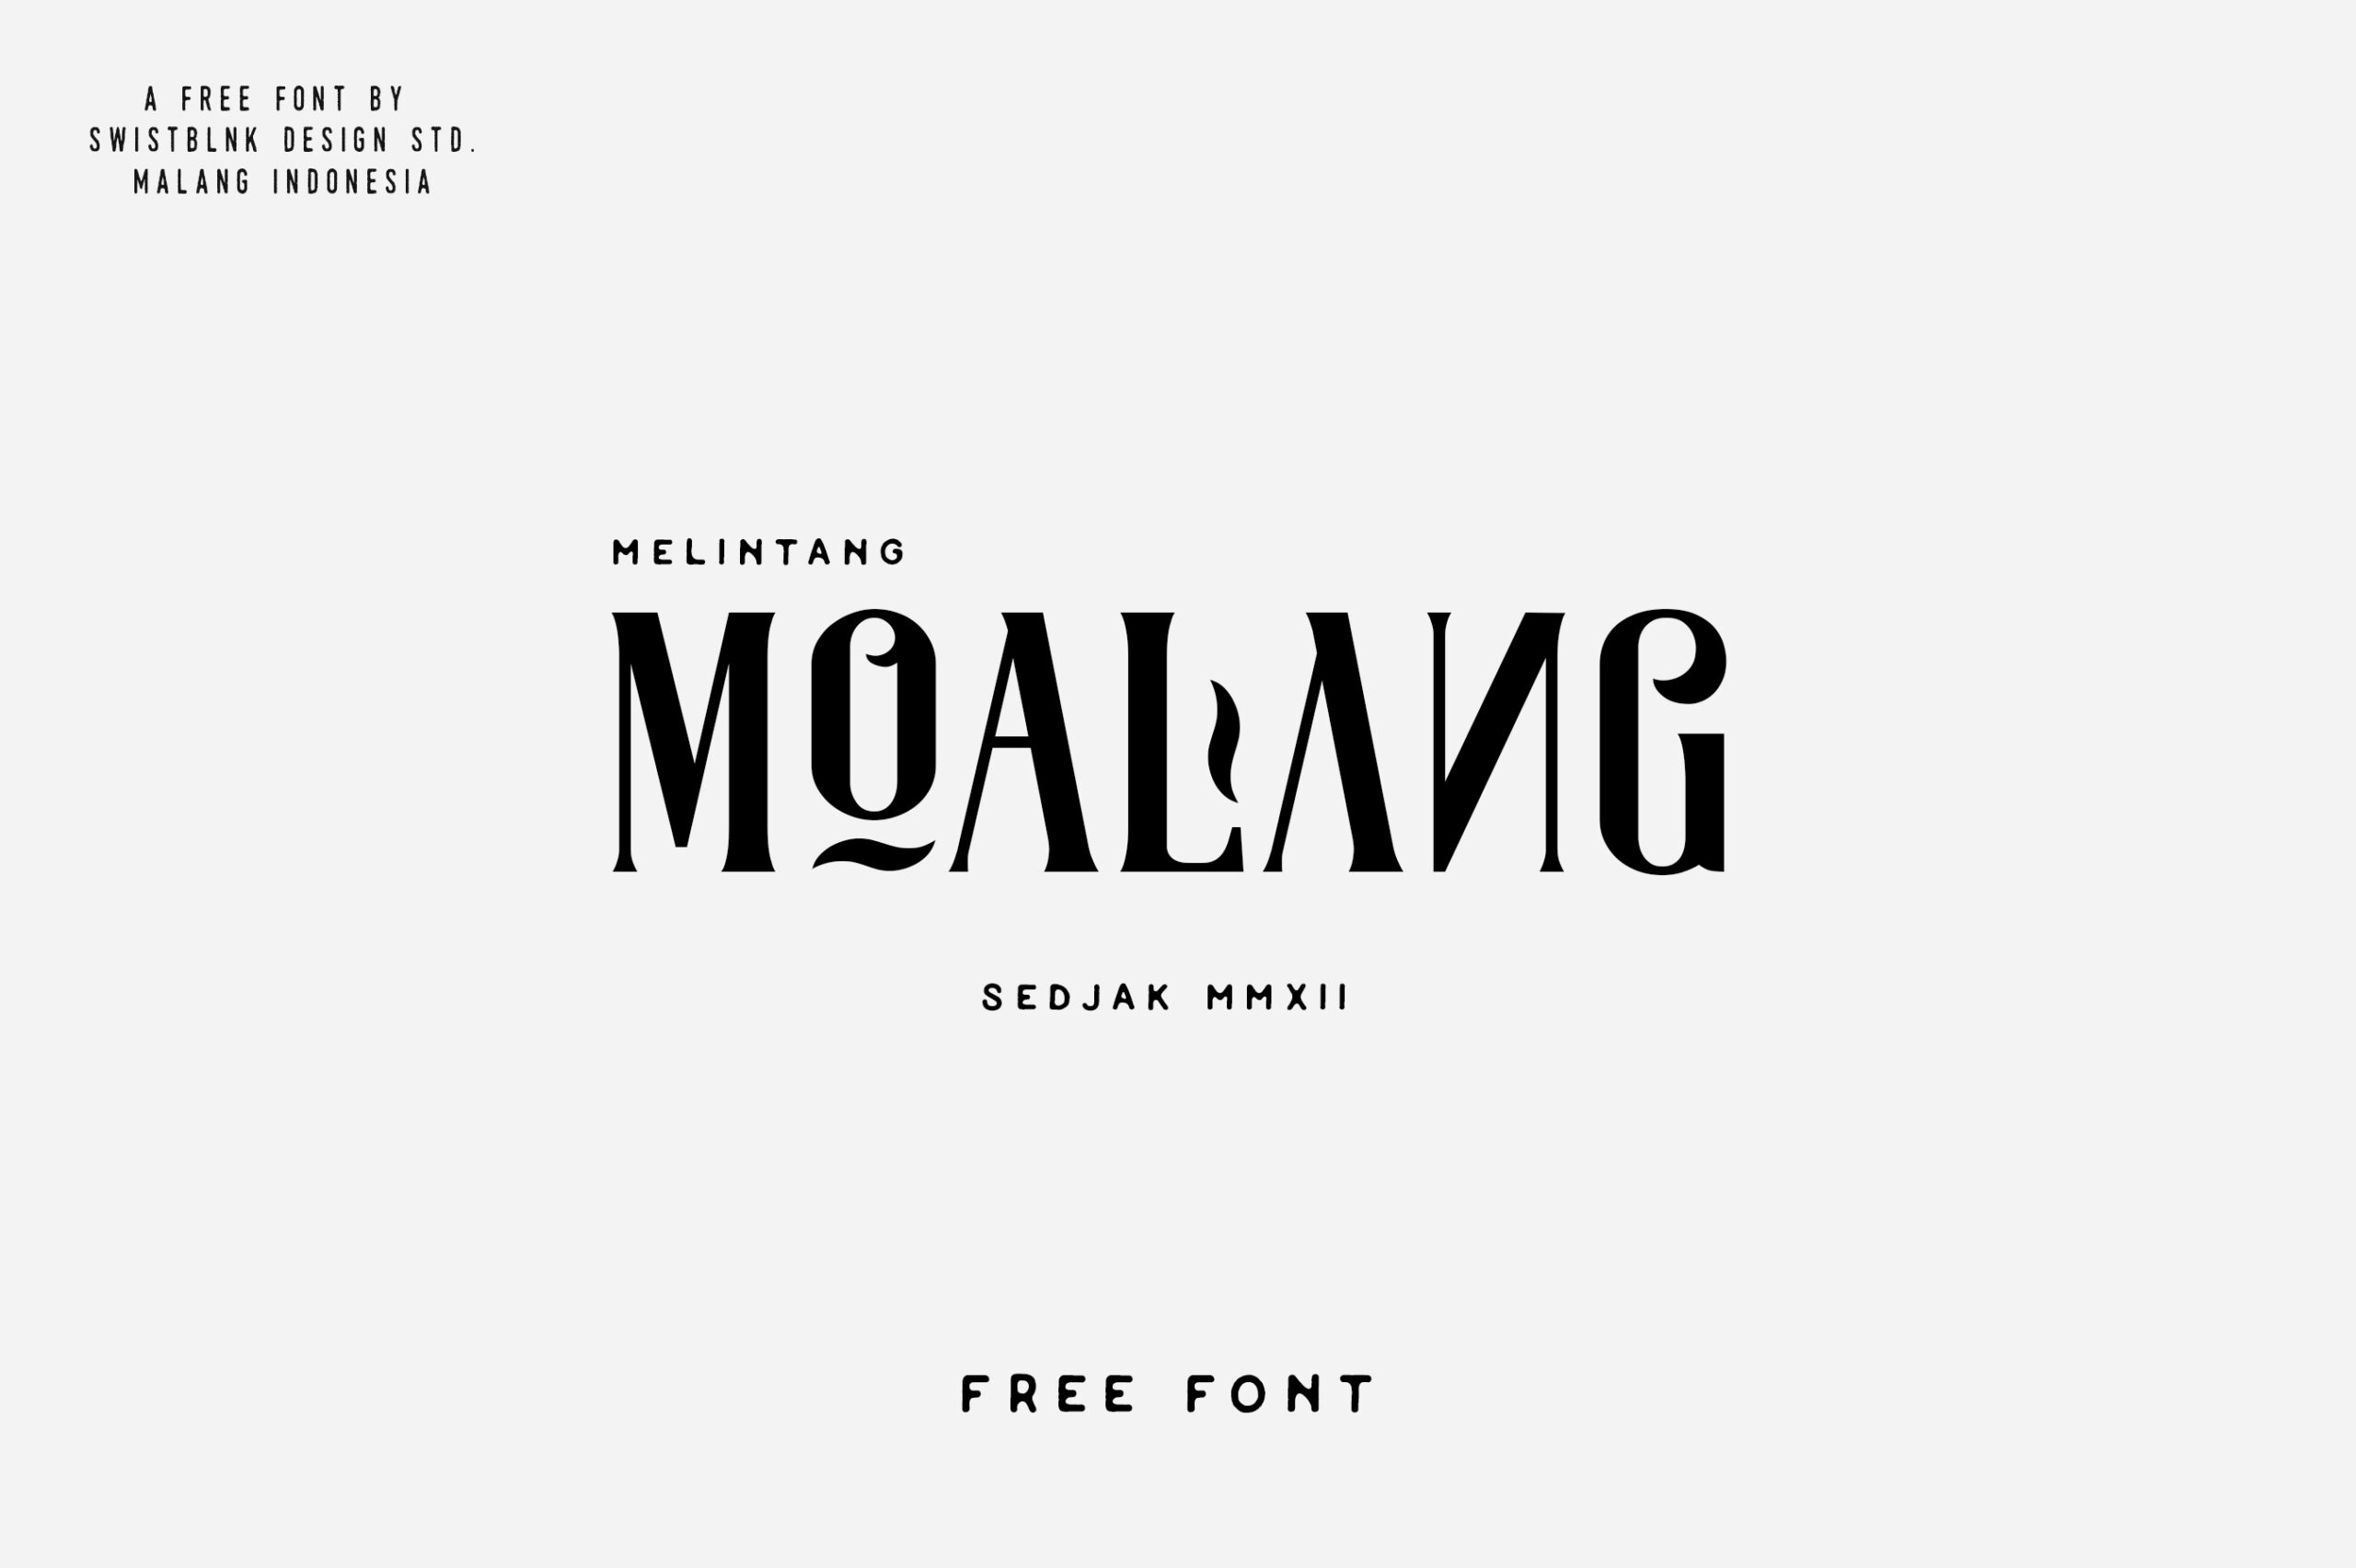 Moalang Free Font